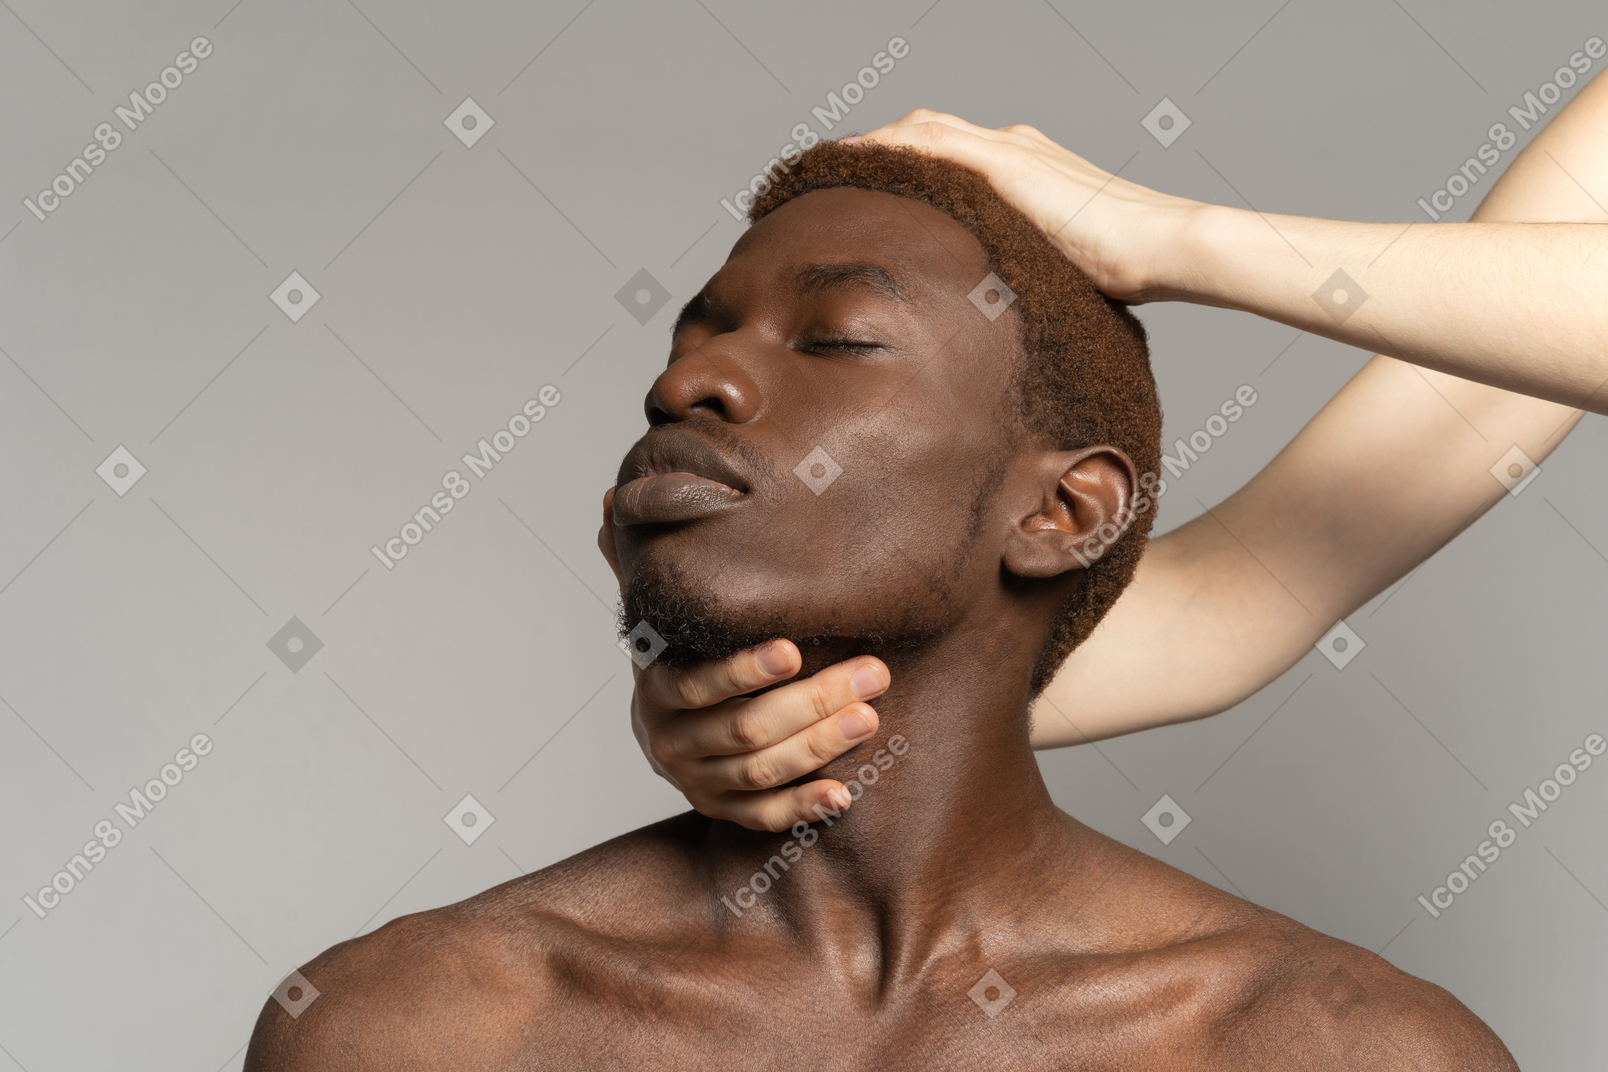 La main blanche touche le cou et la tête de l'homme noir